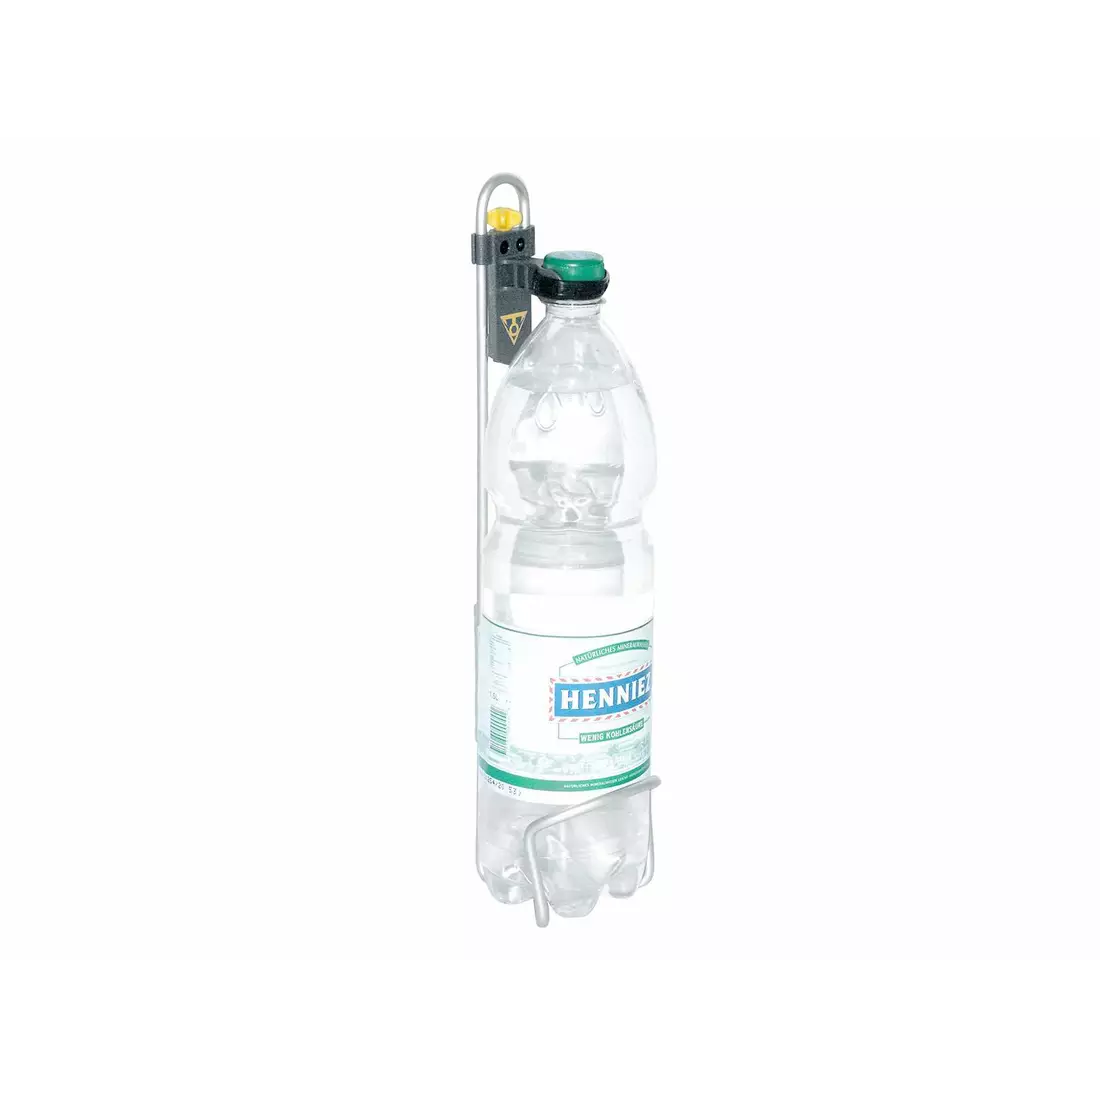 TOPEAK MODULA CAGE XL Regulierbar für Flaschen bis zu 1,5L T-TMD02B